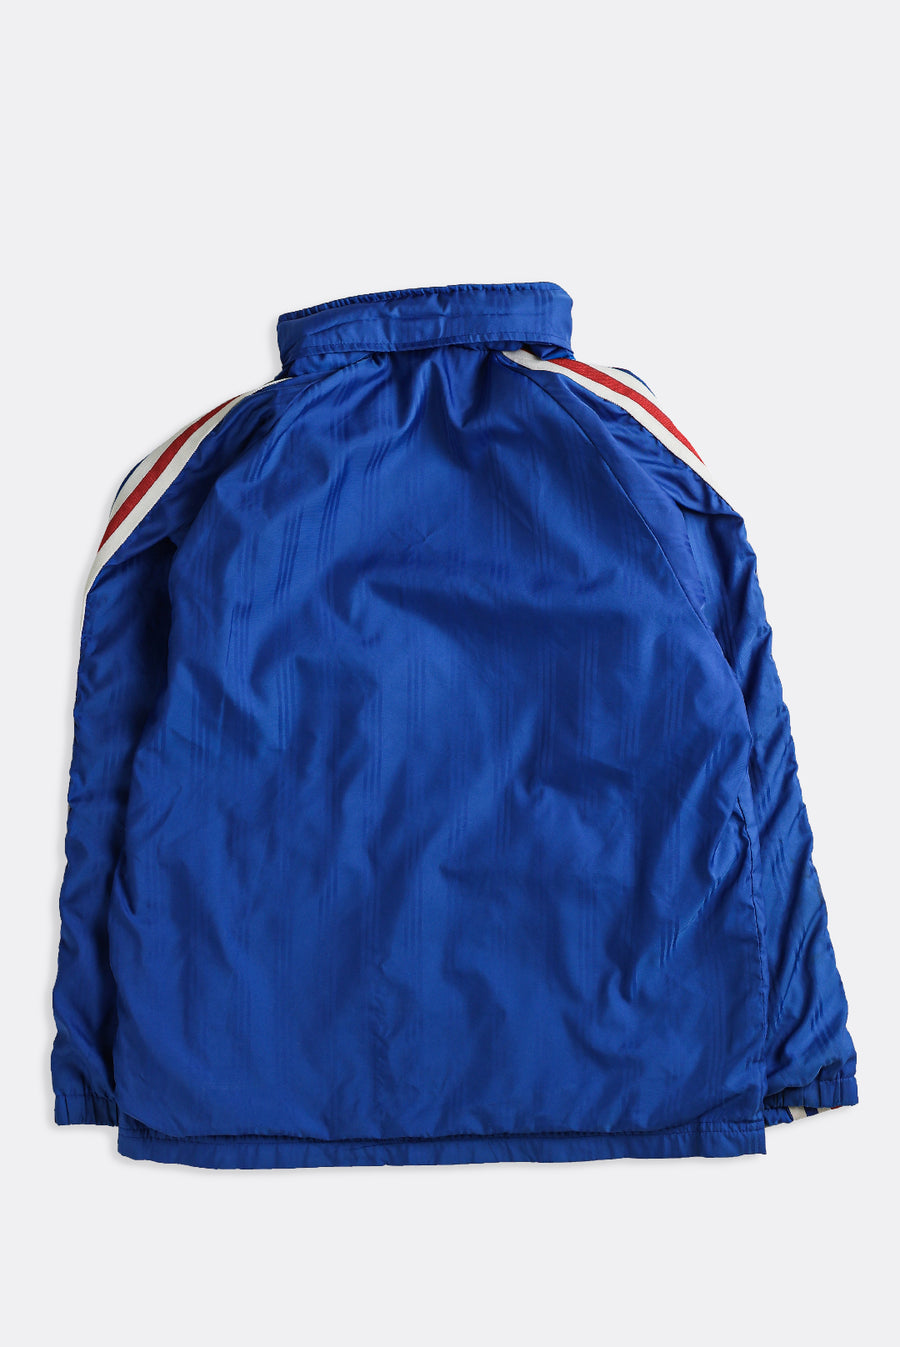 Vintage Adidas Windbreaker Jacket - XS